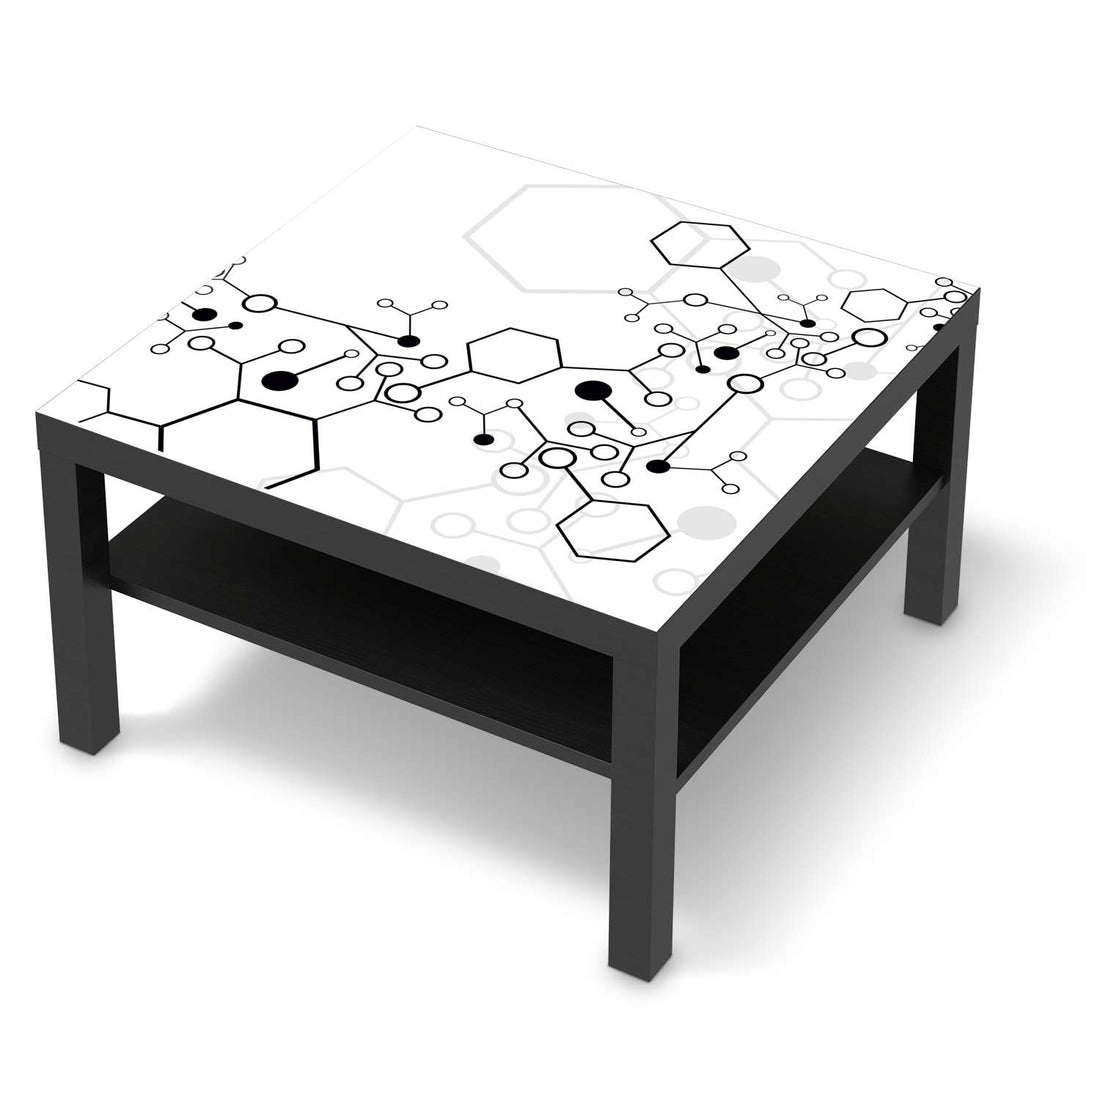 Selbstklebende Folie Atomic 1 - IKEA Lack Tisch 78x78 cm - schwarz